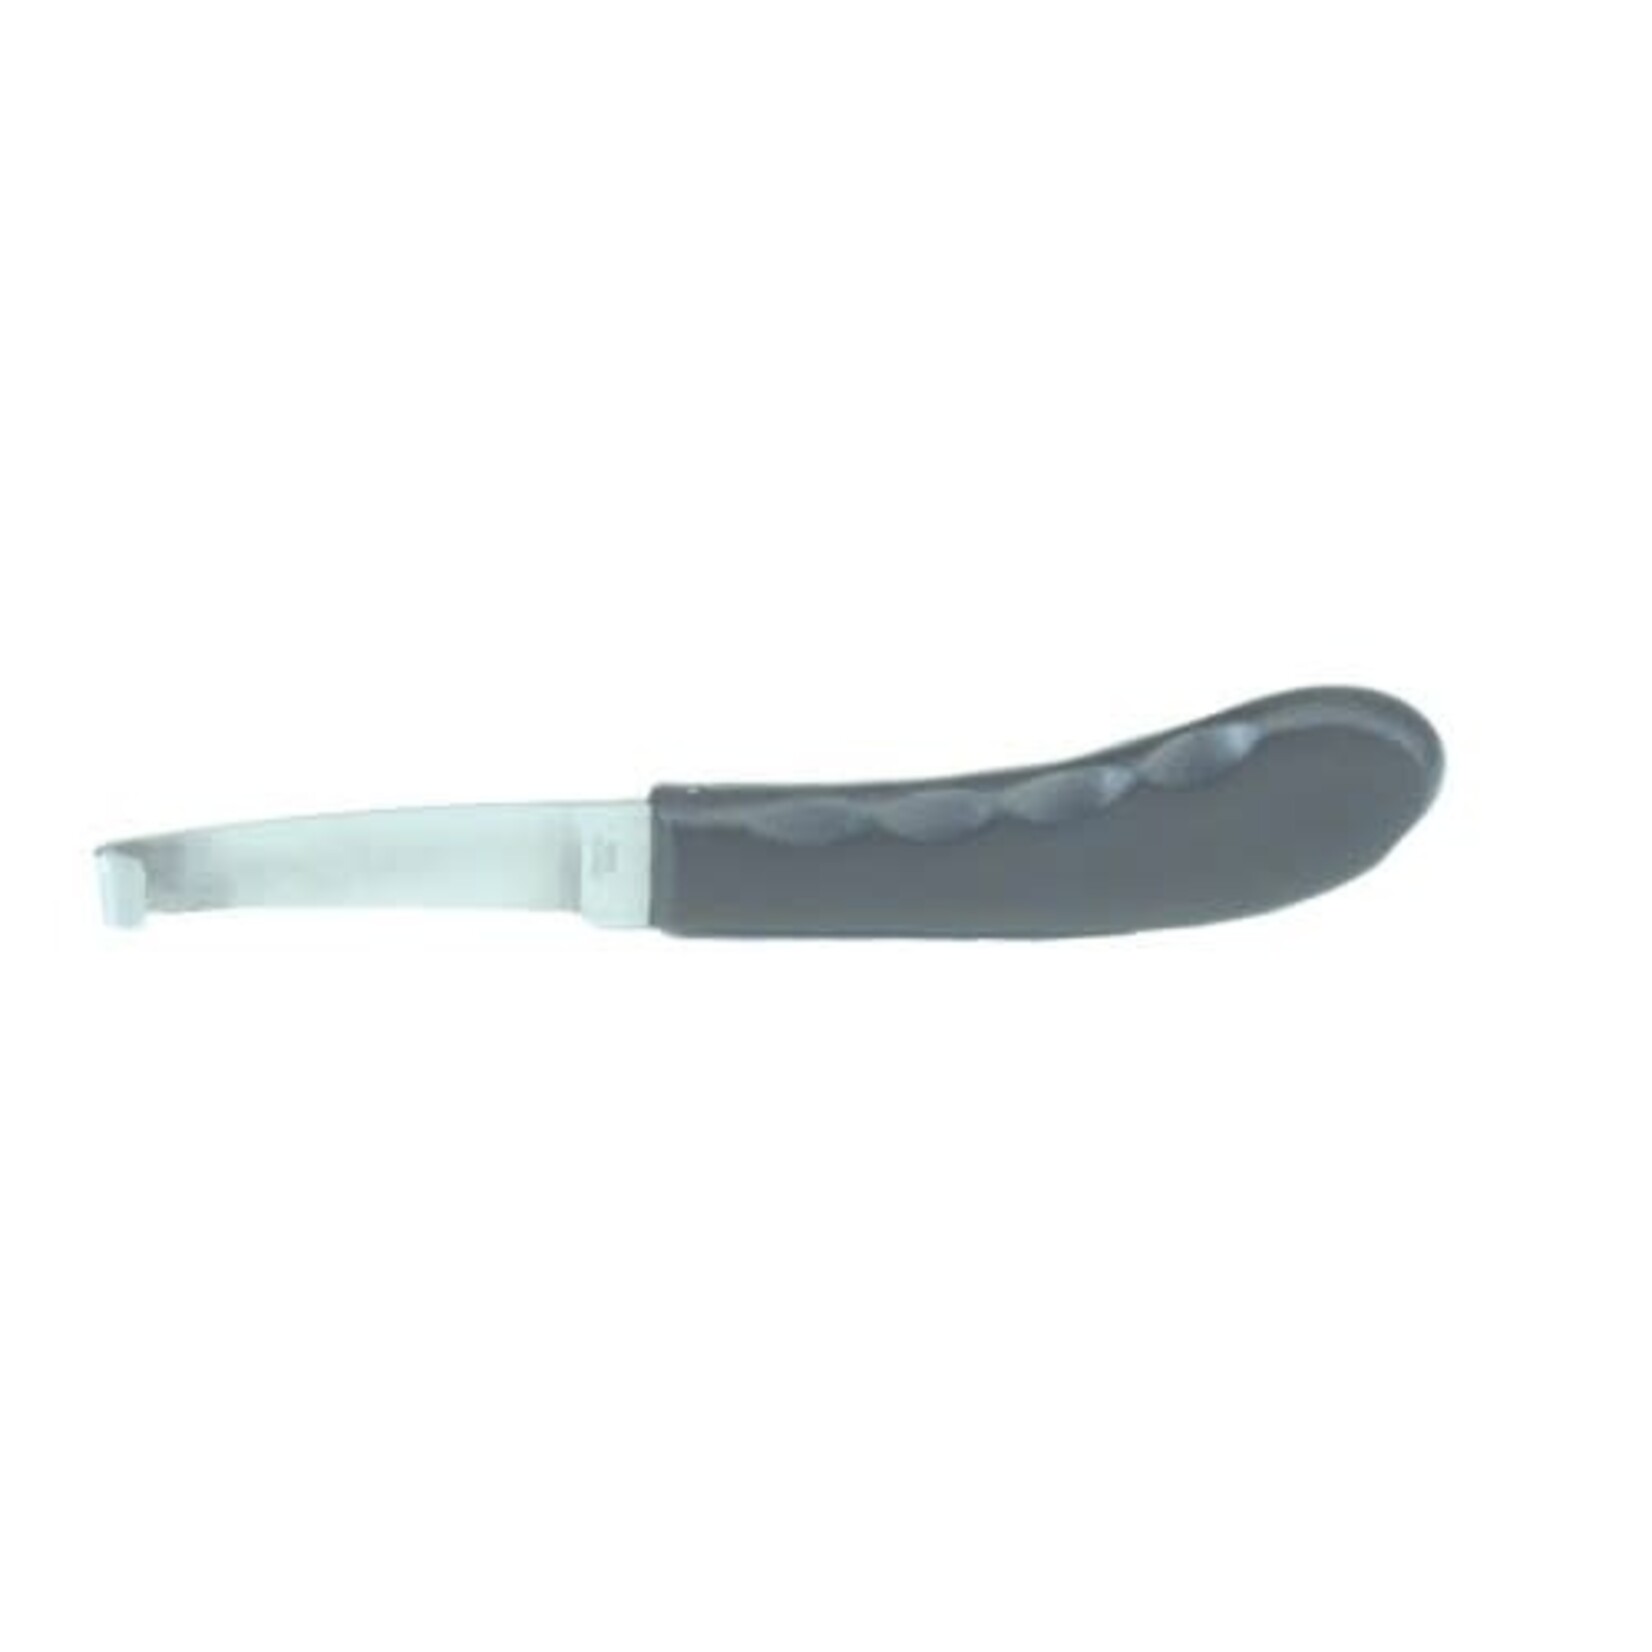 Western Rawhide Stainless Steel Hoof Knife With Plastic Handle